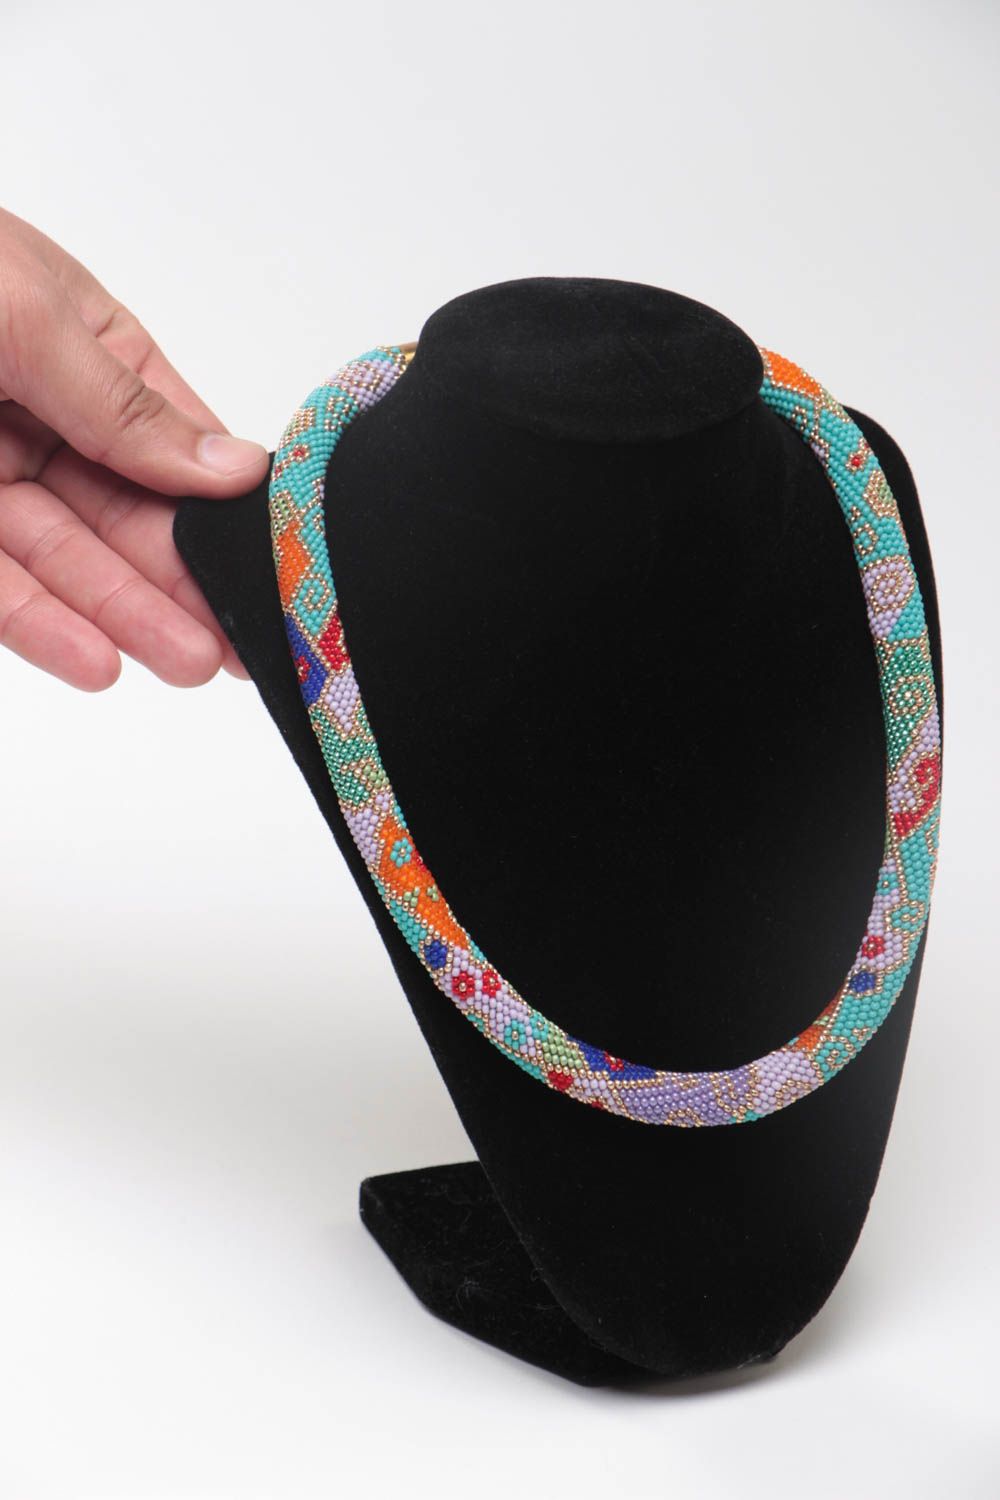 Ожерелье из бисера в форме жгута цветное стильное необычное модное ручной работы фото 5